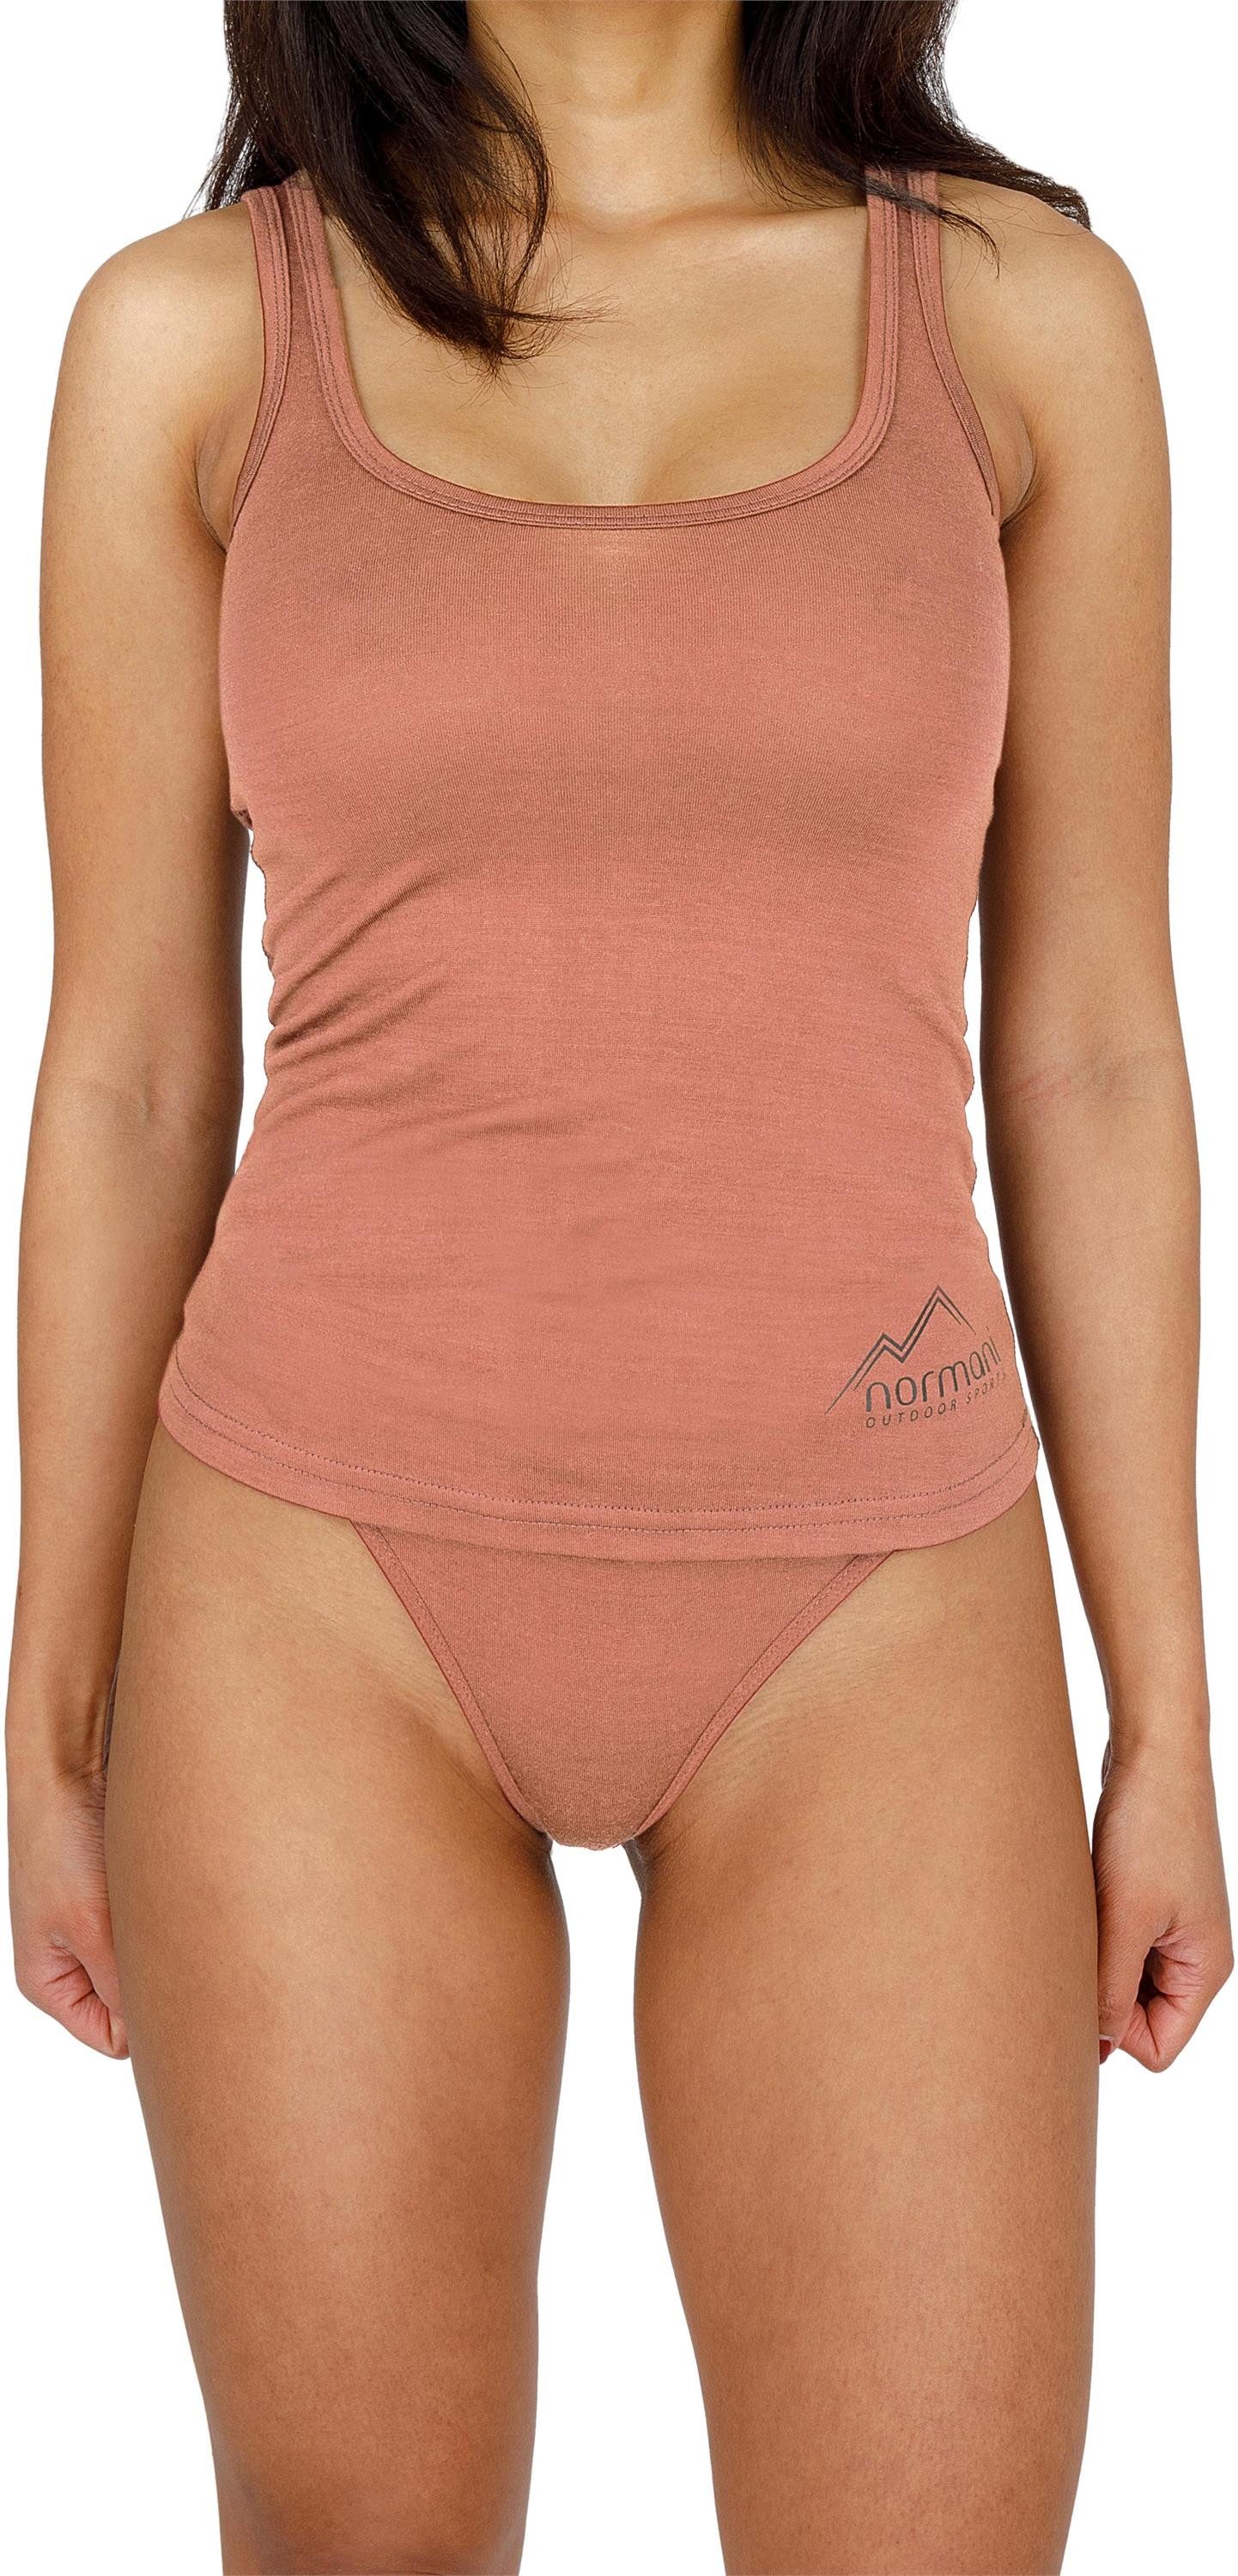 normani Unterhemd Damen Tanktop Quilpie Merino Top ärmelloses Shirt Unterwäsche aus 100% Bio-Merinowolle